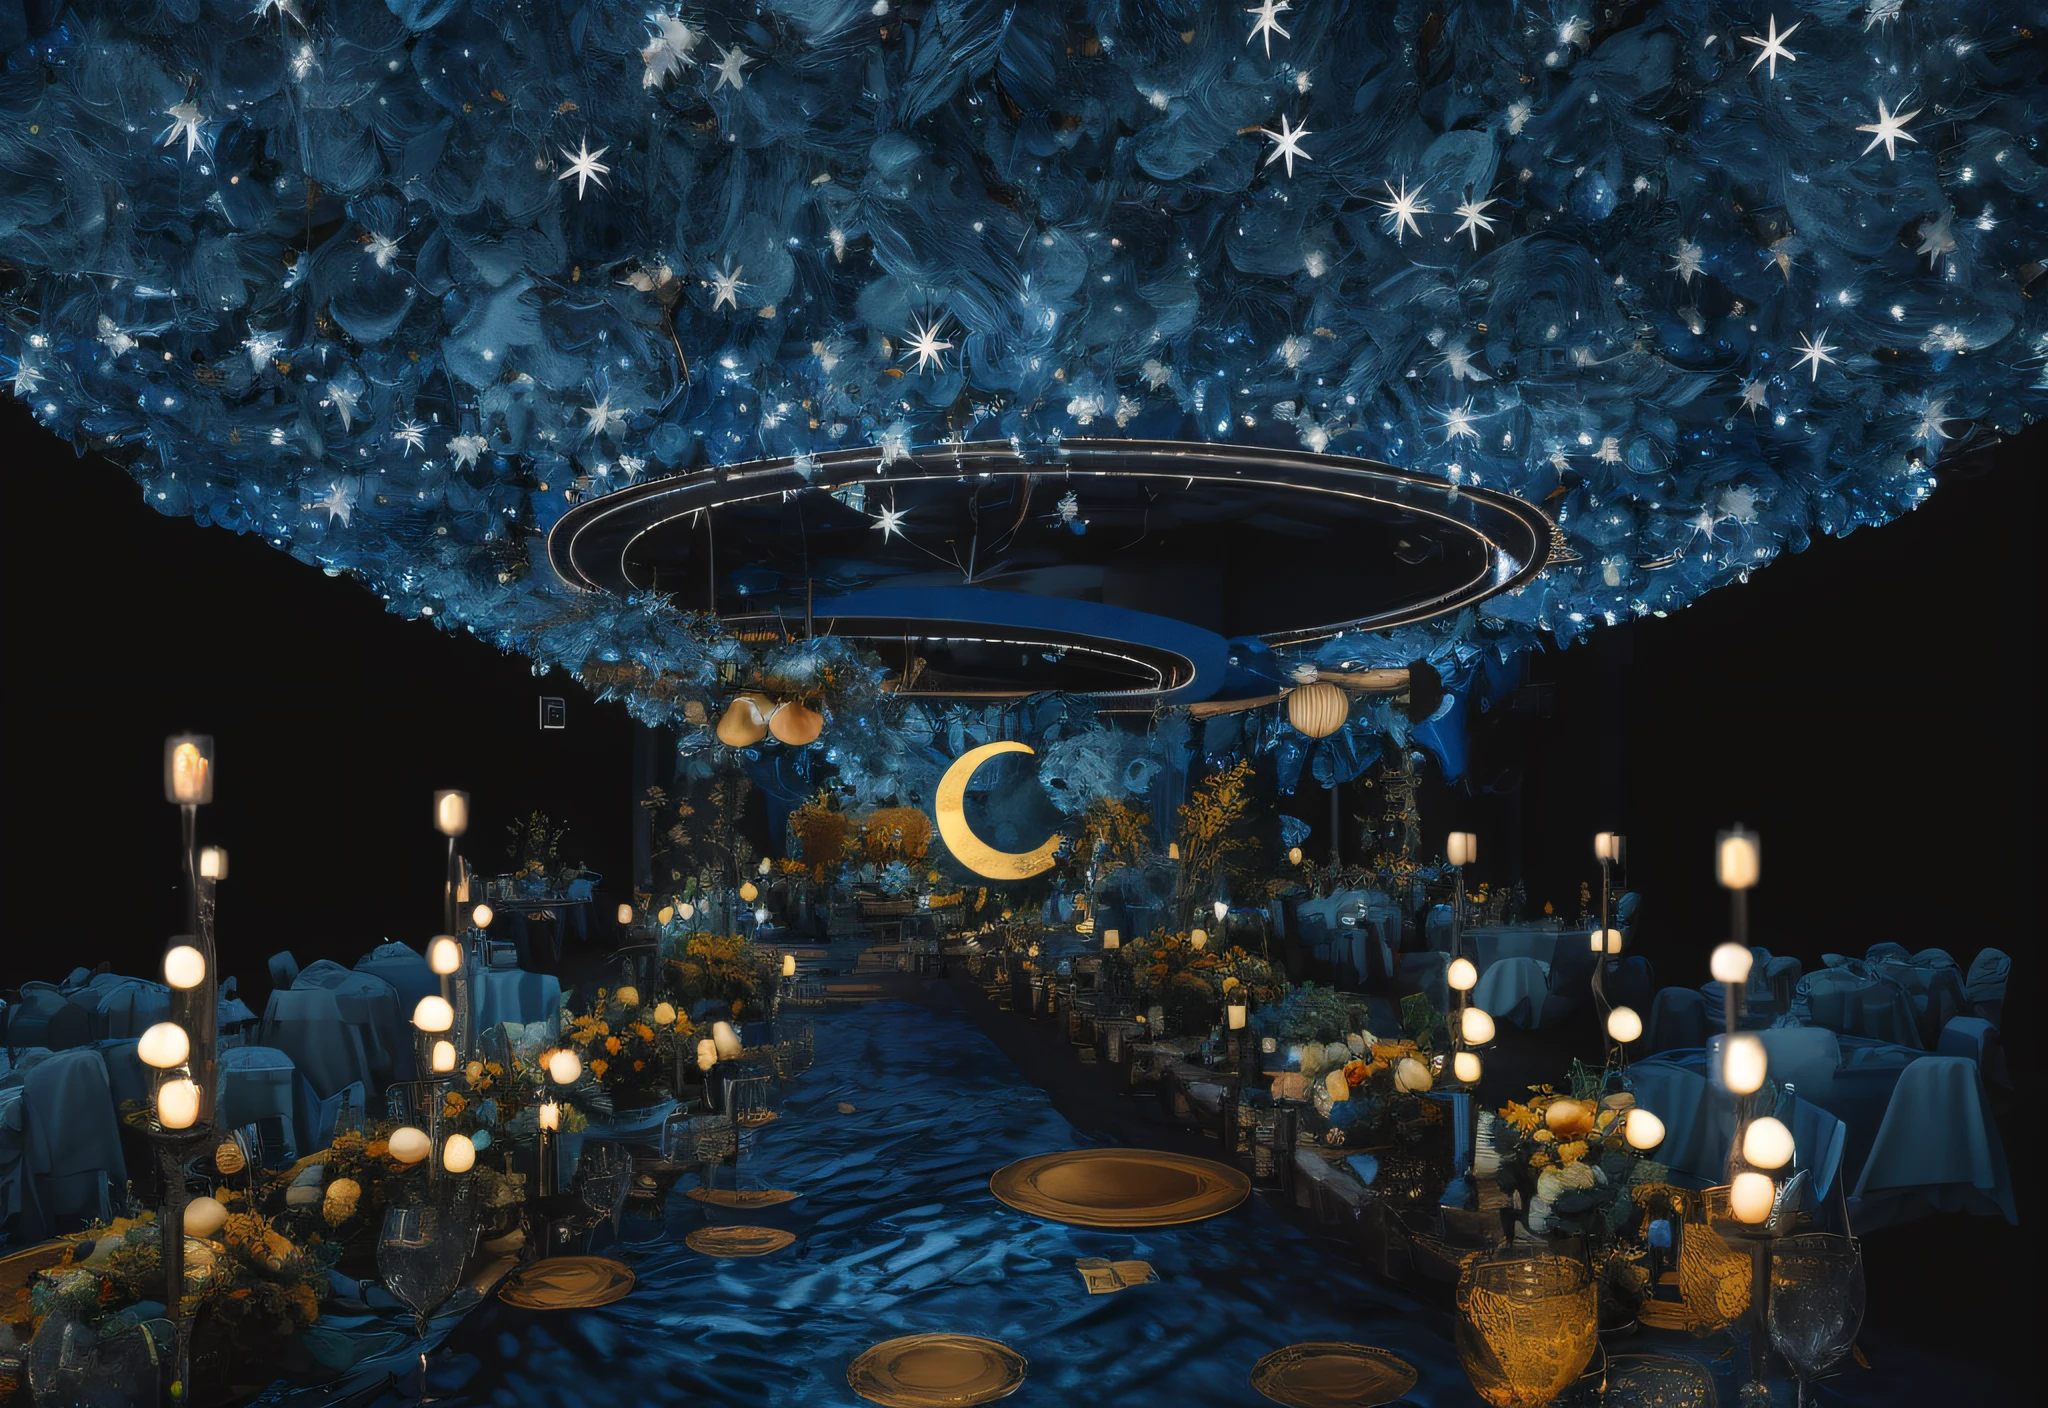 （Van Gogh，himawari，Starry Mond, Mond，Blumen）， (fotorealistisch:1.5), （gute Schatten），Gute Konstruktion，Volumetrische Beleuchtung，filmisches Licht，（HöchsteQualität，Preisgekrönt，Meisterstück：1.5），chies，Hochzeitssaal，Hochzeitsdesign-Renderings，Klarer，8K，ultrahohe Auflösung，Die Designfarbe ist Blau，Wunderschön eingerichtet，3D-Darstellung von，Hochzeitsbankettsaal，themoon，hyper HD，Sternenlichter，